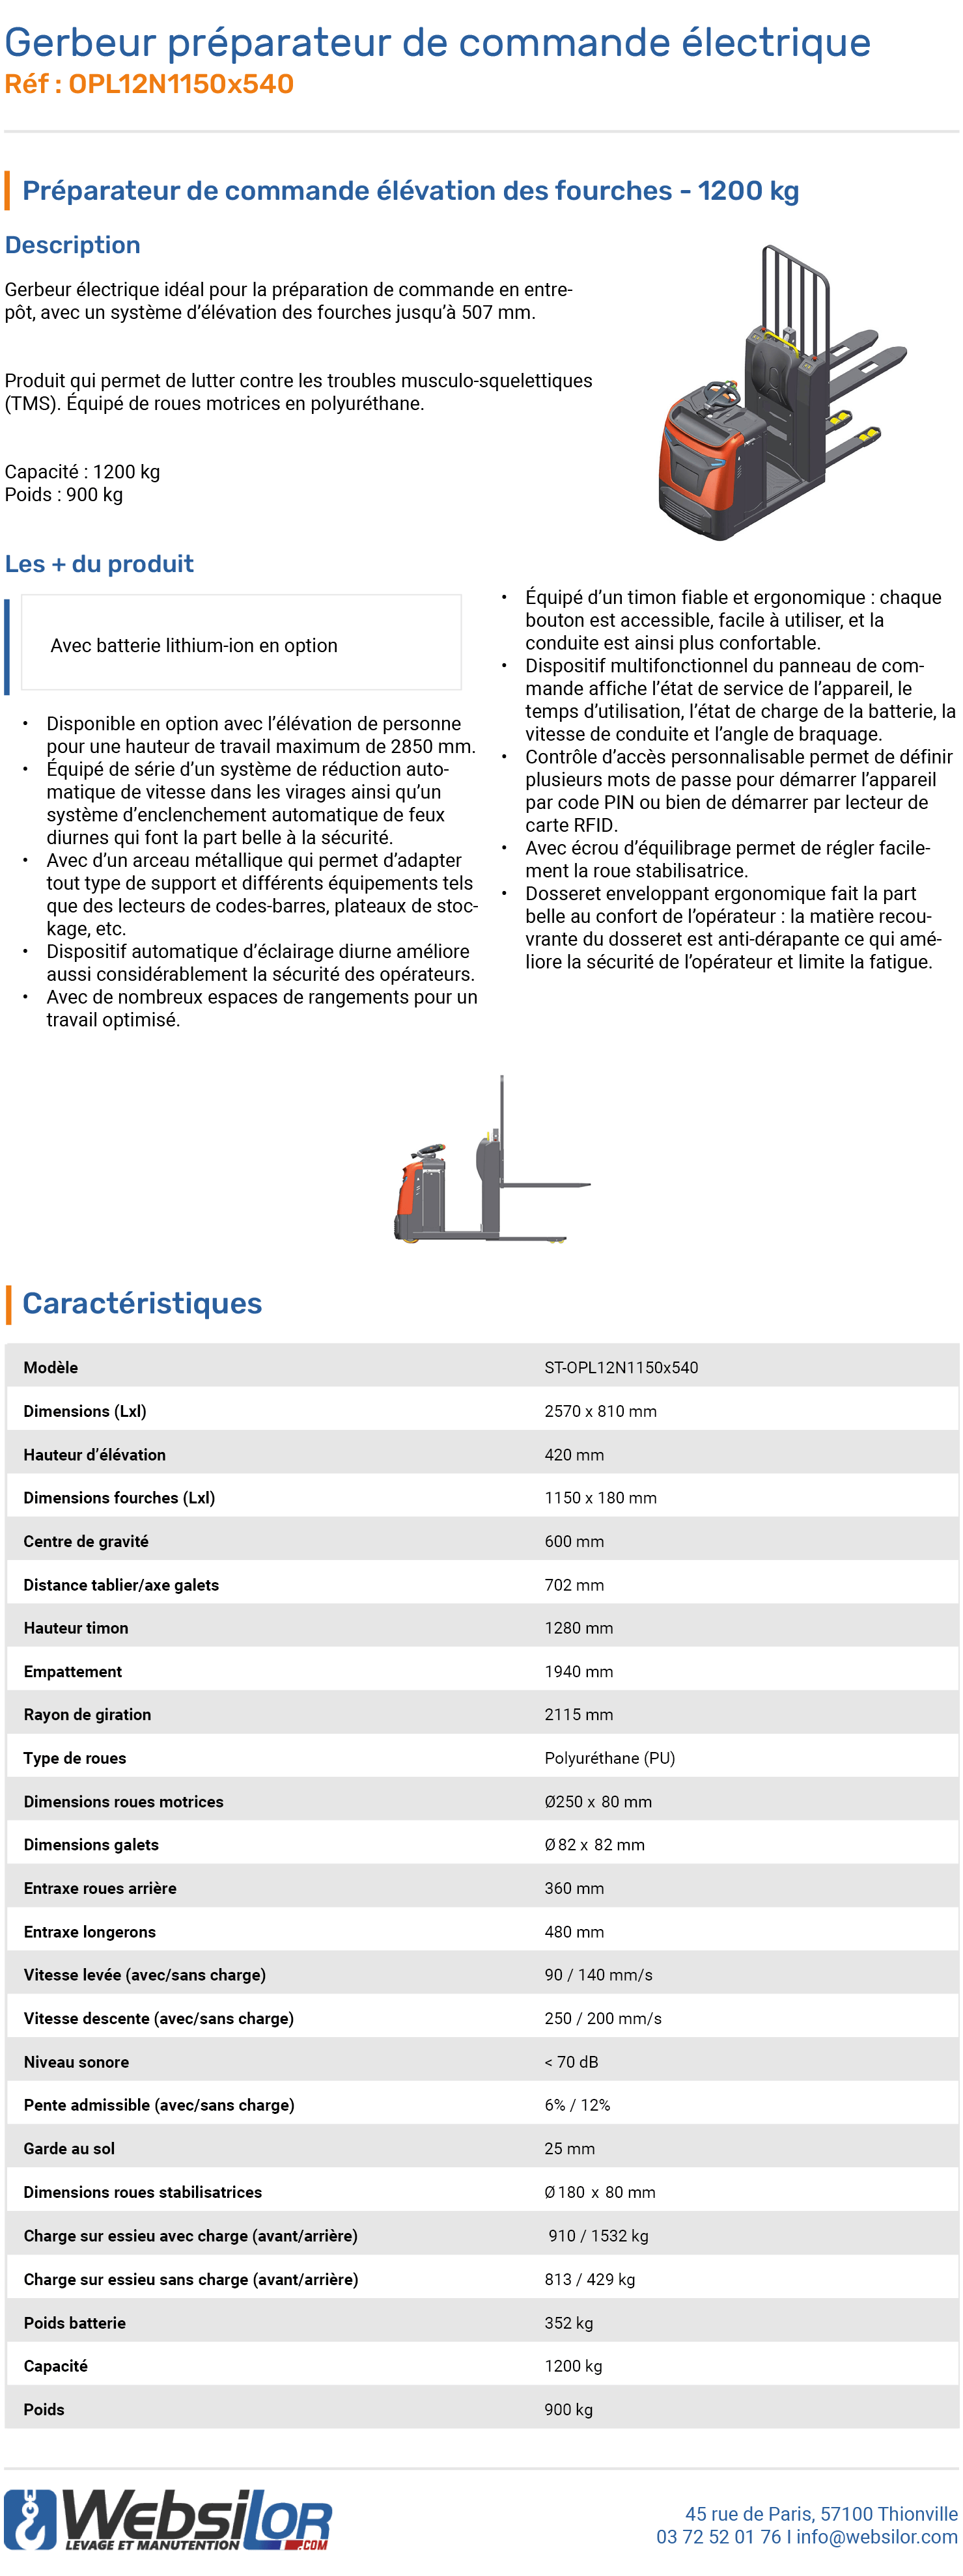 Informations techniques Gerbeur préparateur de commande électrique 1200 kg